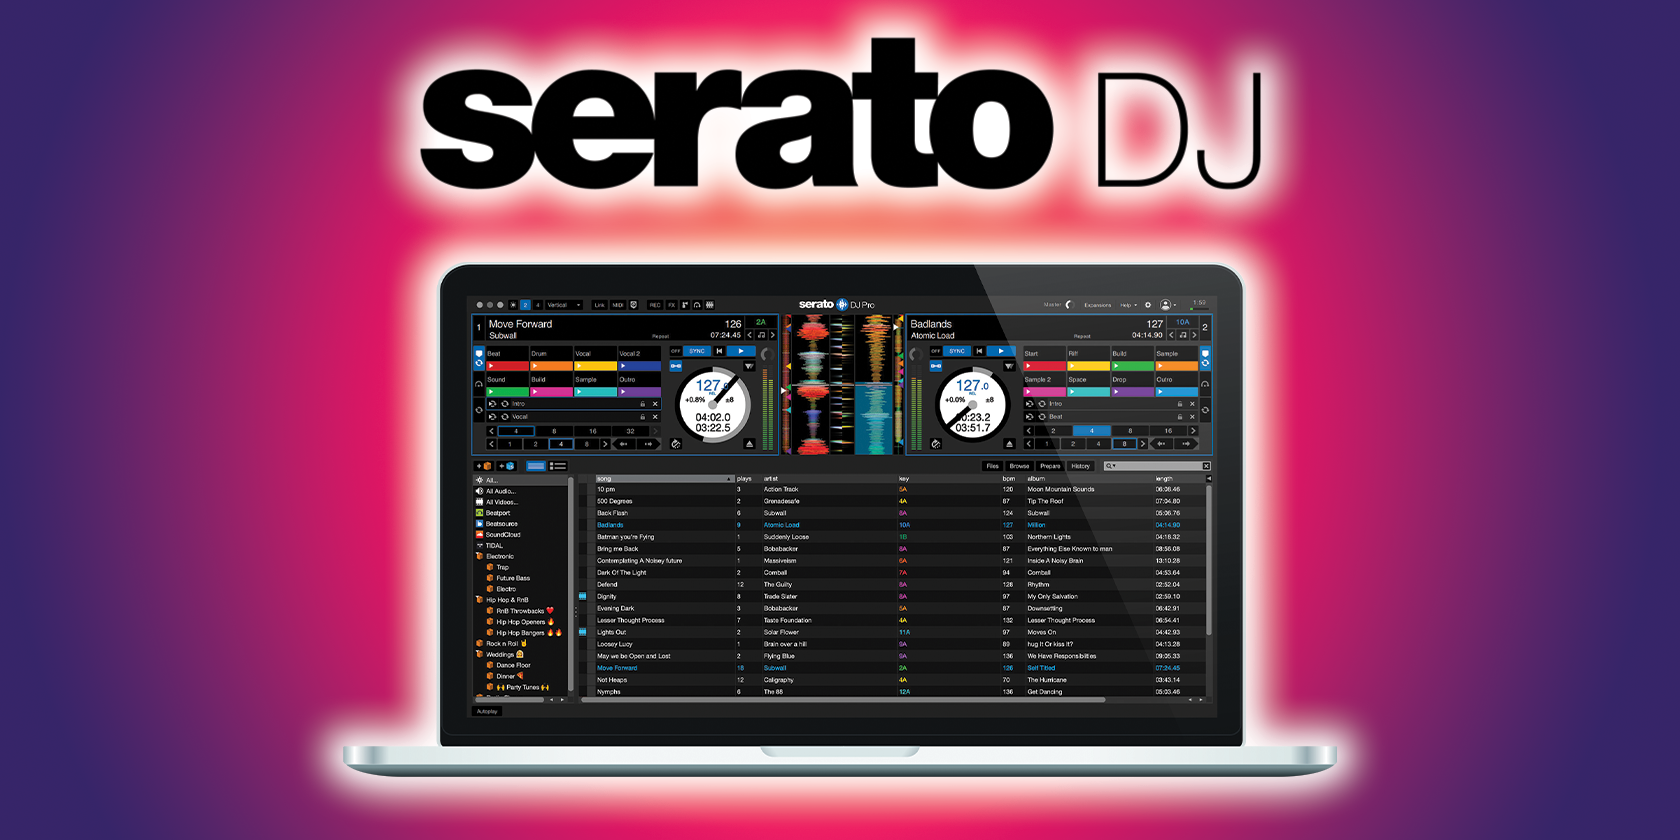 serato dj pro for mac free download